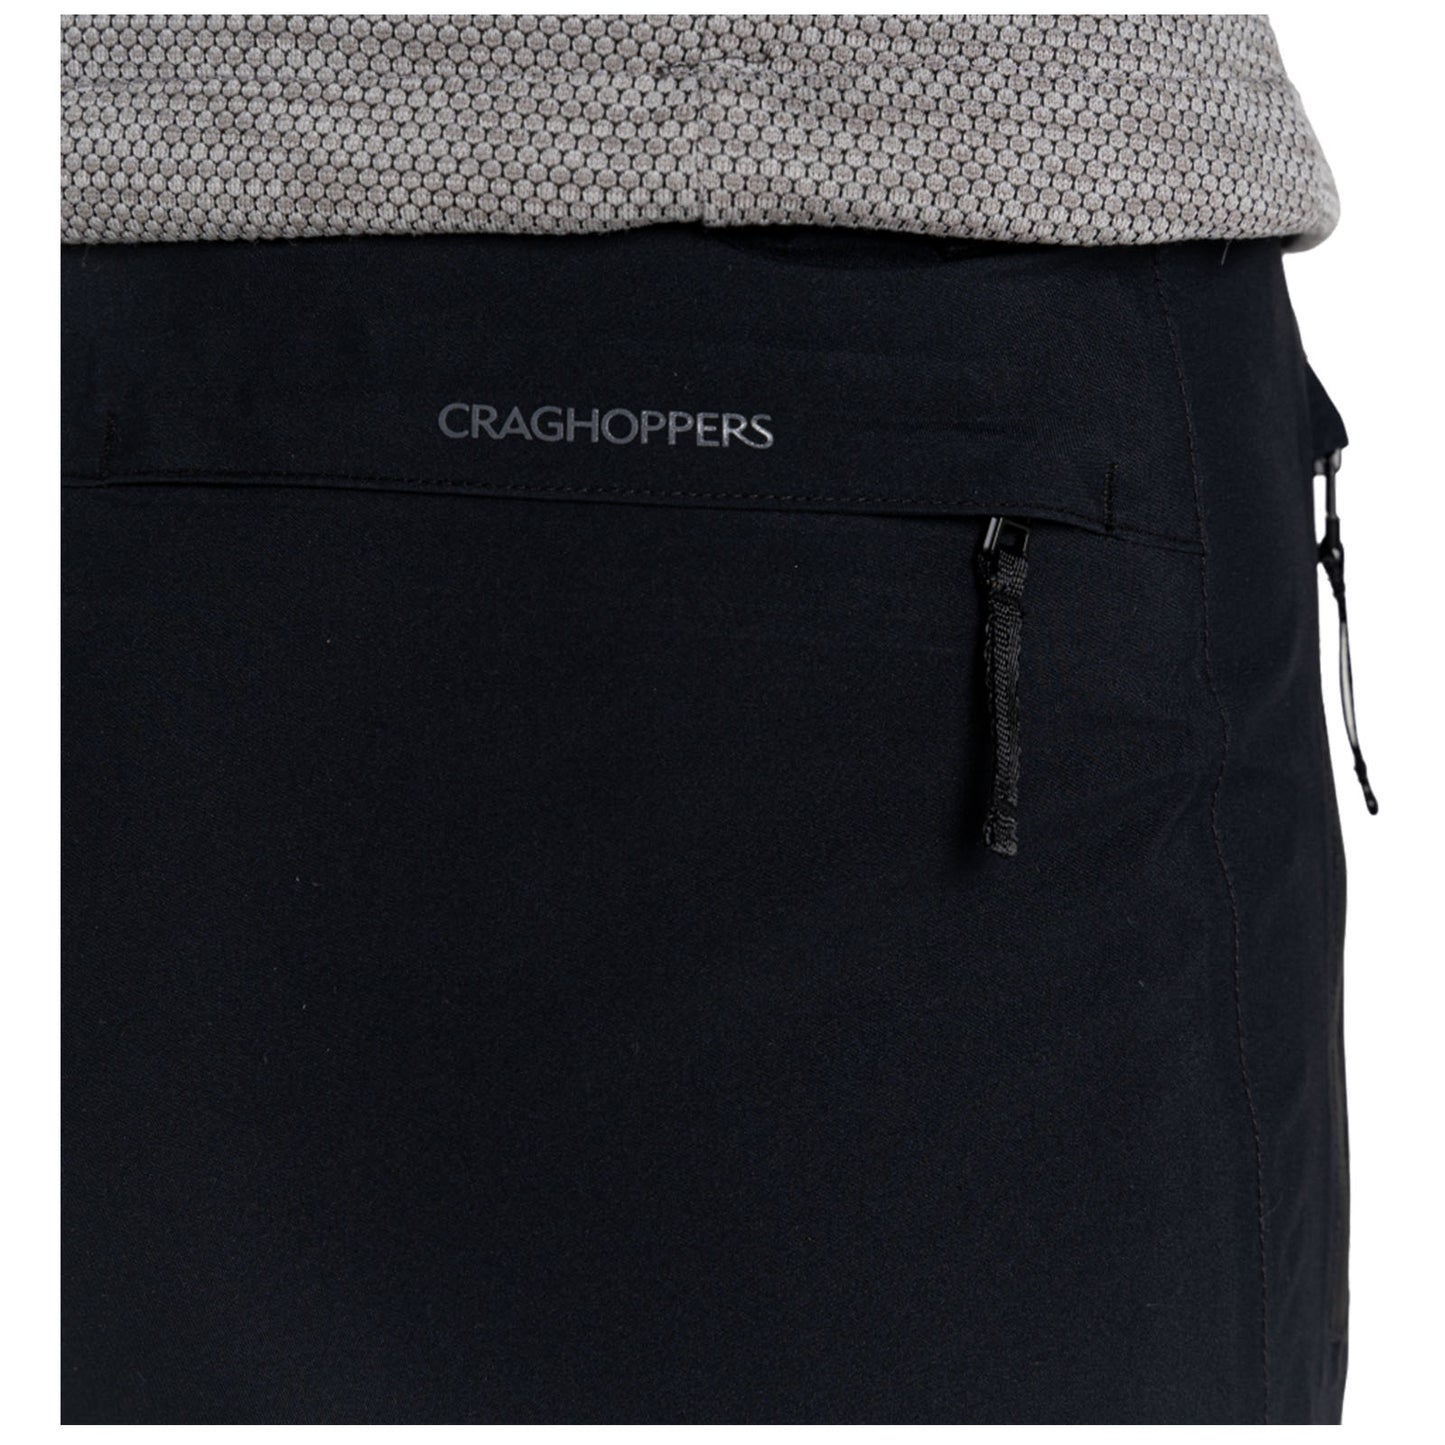 Craghoppers Ladies Jullio GORE-TEX Waterproof Trousers